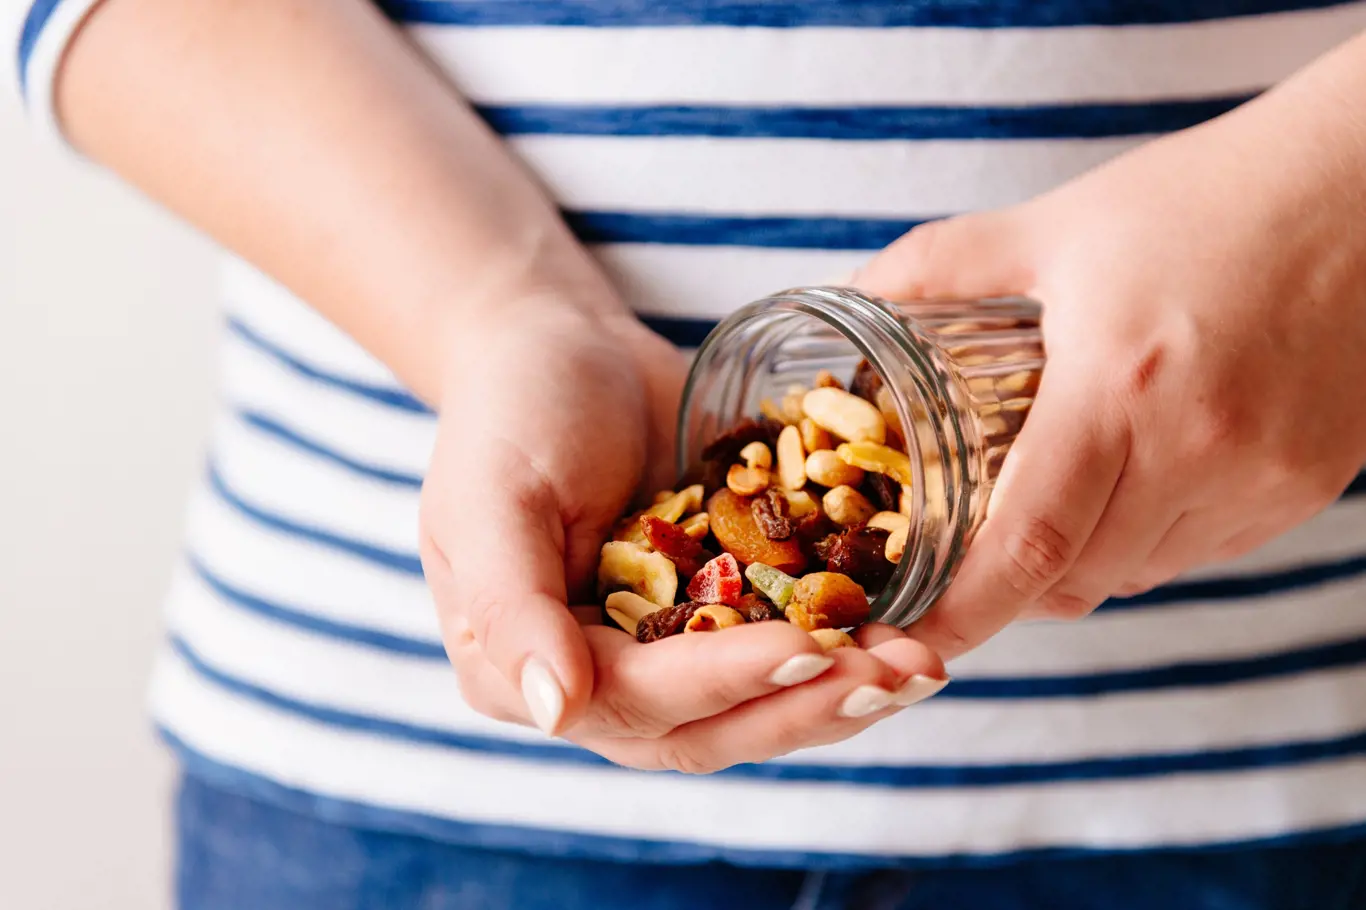 Sušené ovoce a oříšky sice vypadají jako dietní, ale ořechy obsahují spoustu tuků a ovoce bývá často přislazováno